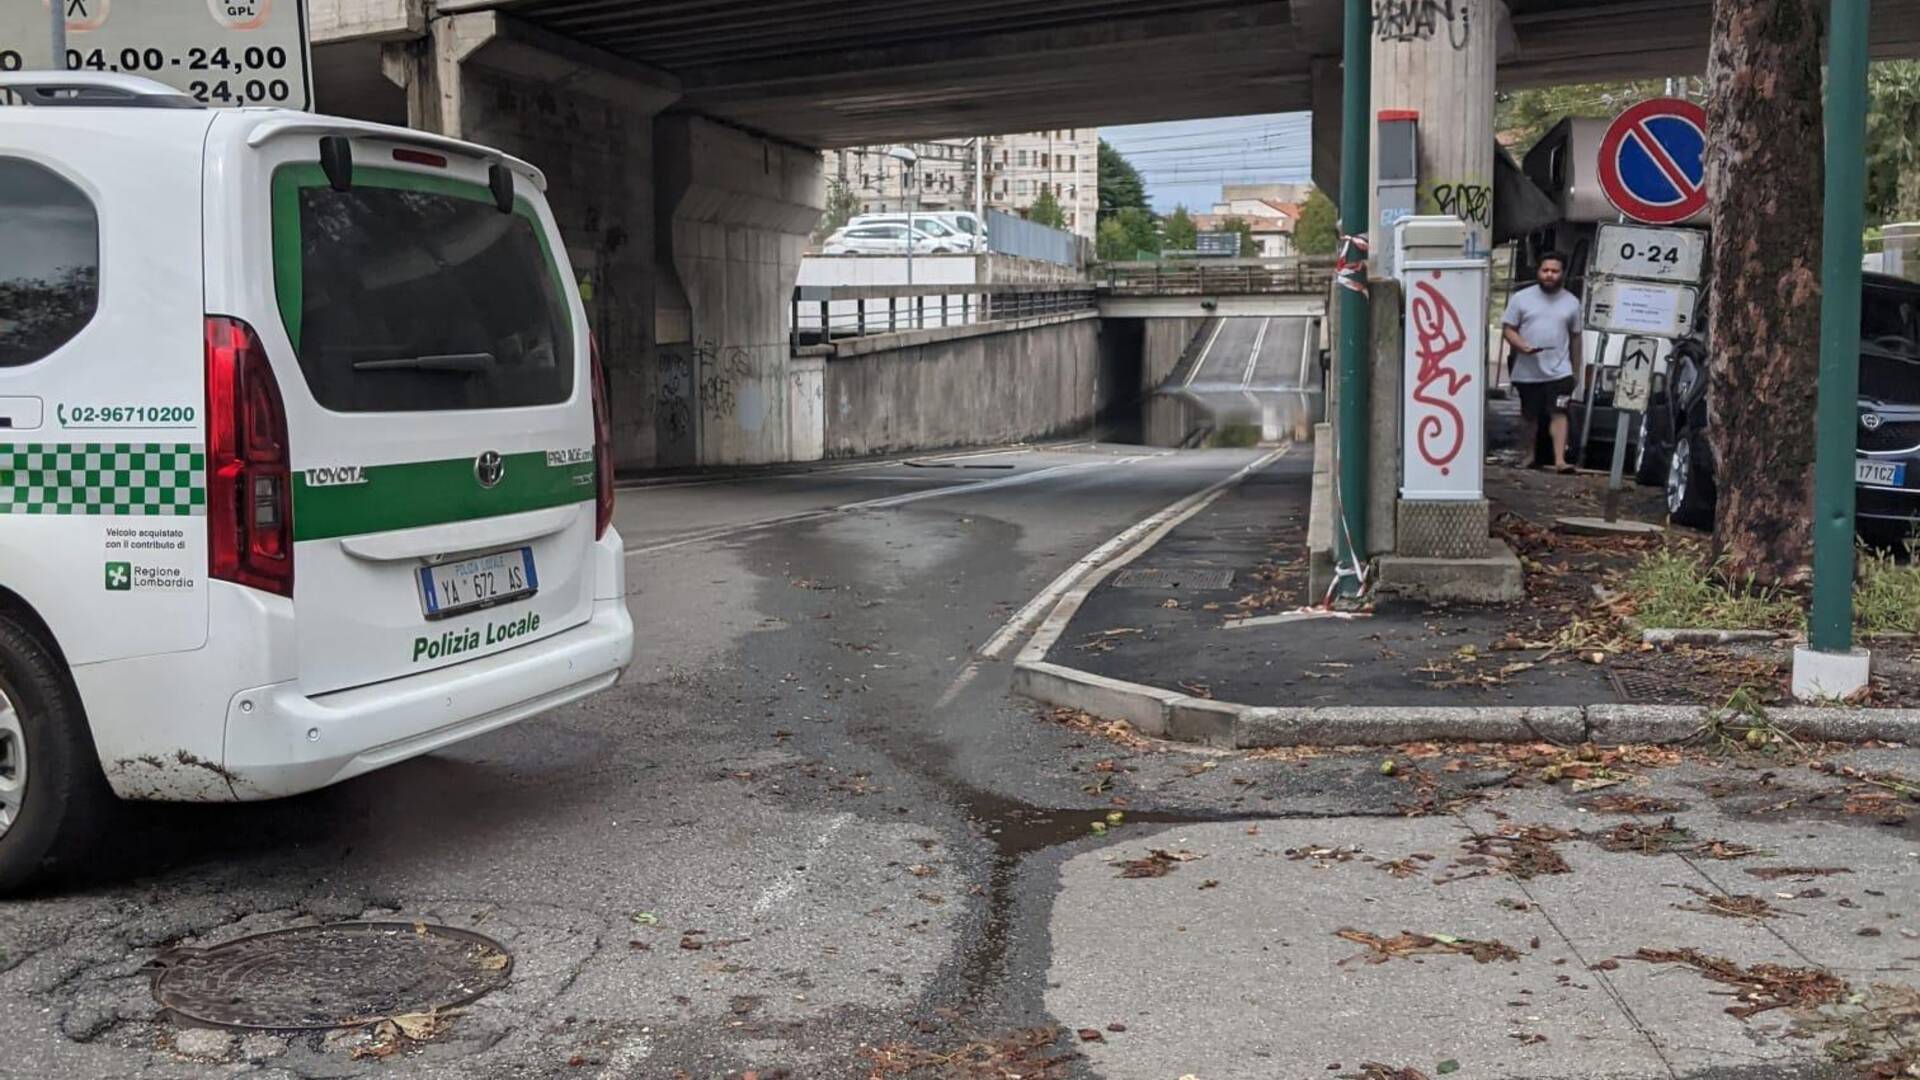 Saronno, via Milano sottopasso chiuso almeno fino alle 17: intervento in corso